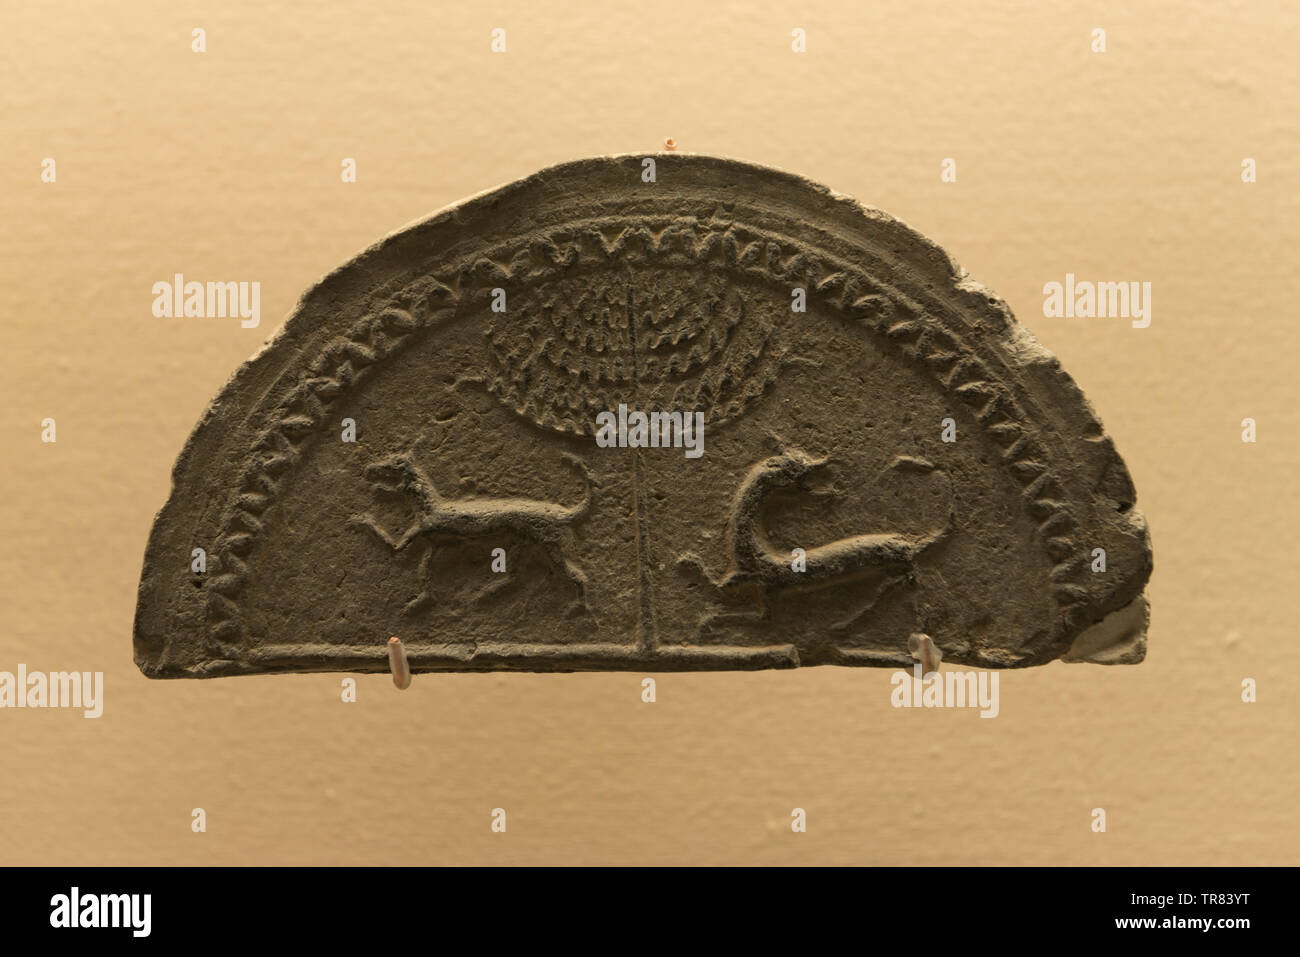 Avant-toit tuile avec arbre et deux animaux sauvages. La période des Royaumes combattants (475-221 av. J.-C.). Le Qi Heritage Museum situé à Linzi, Shandong, Chine. Banque D'Images